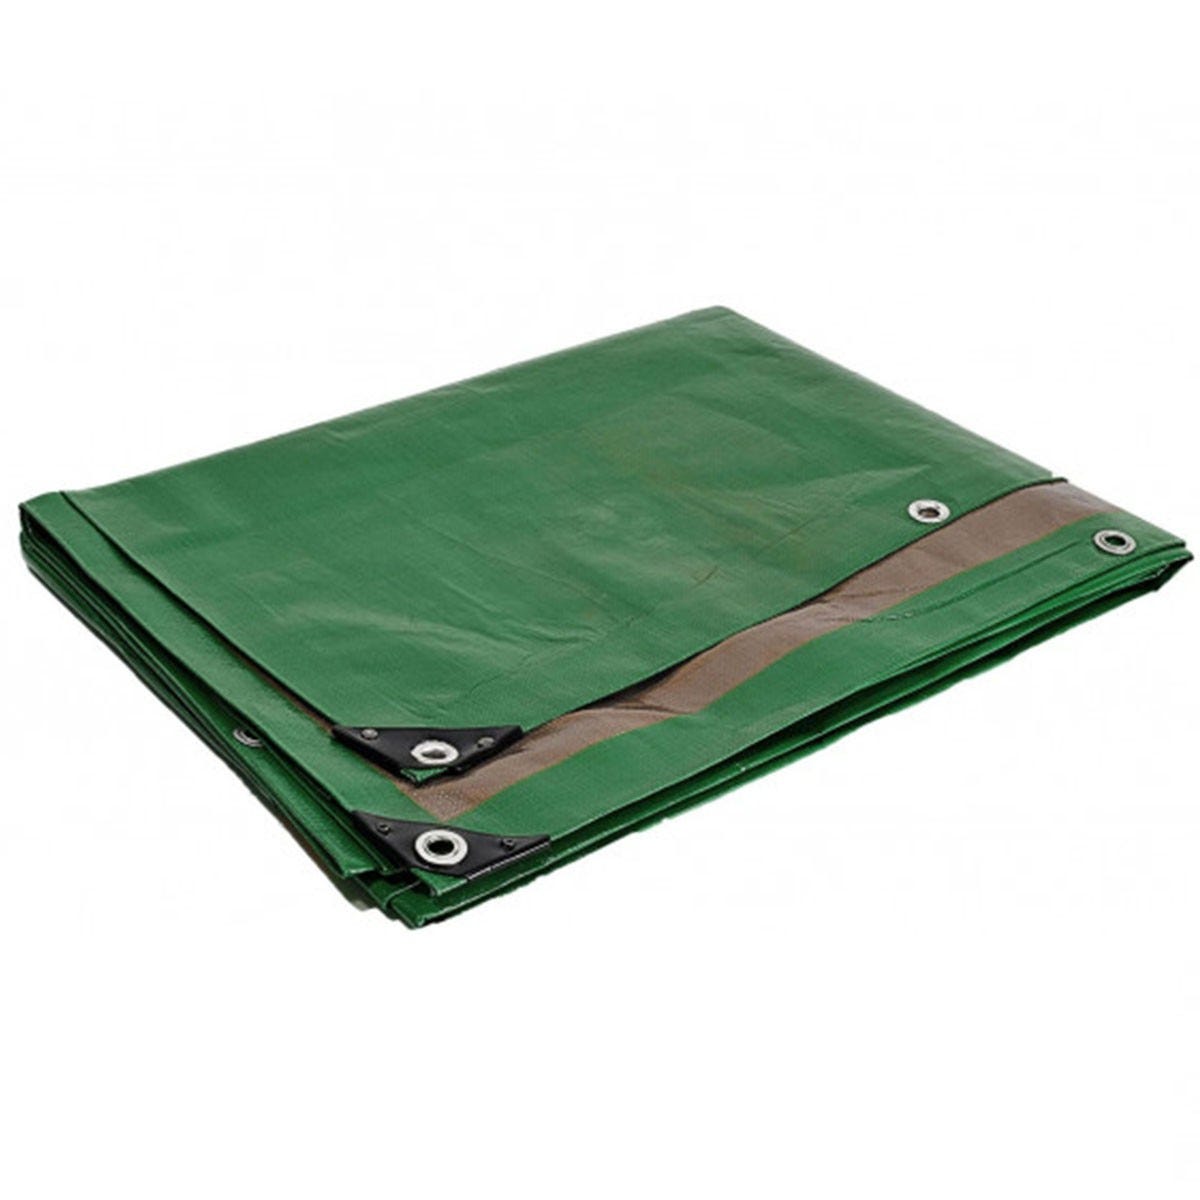 Bâche plastique 6 x 10 m étanche traitée anti UV verte et marron 250g/m² - bâche de protection polyéthylène haute qualité 1